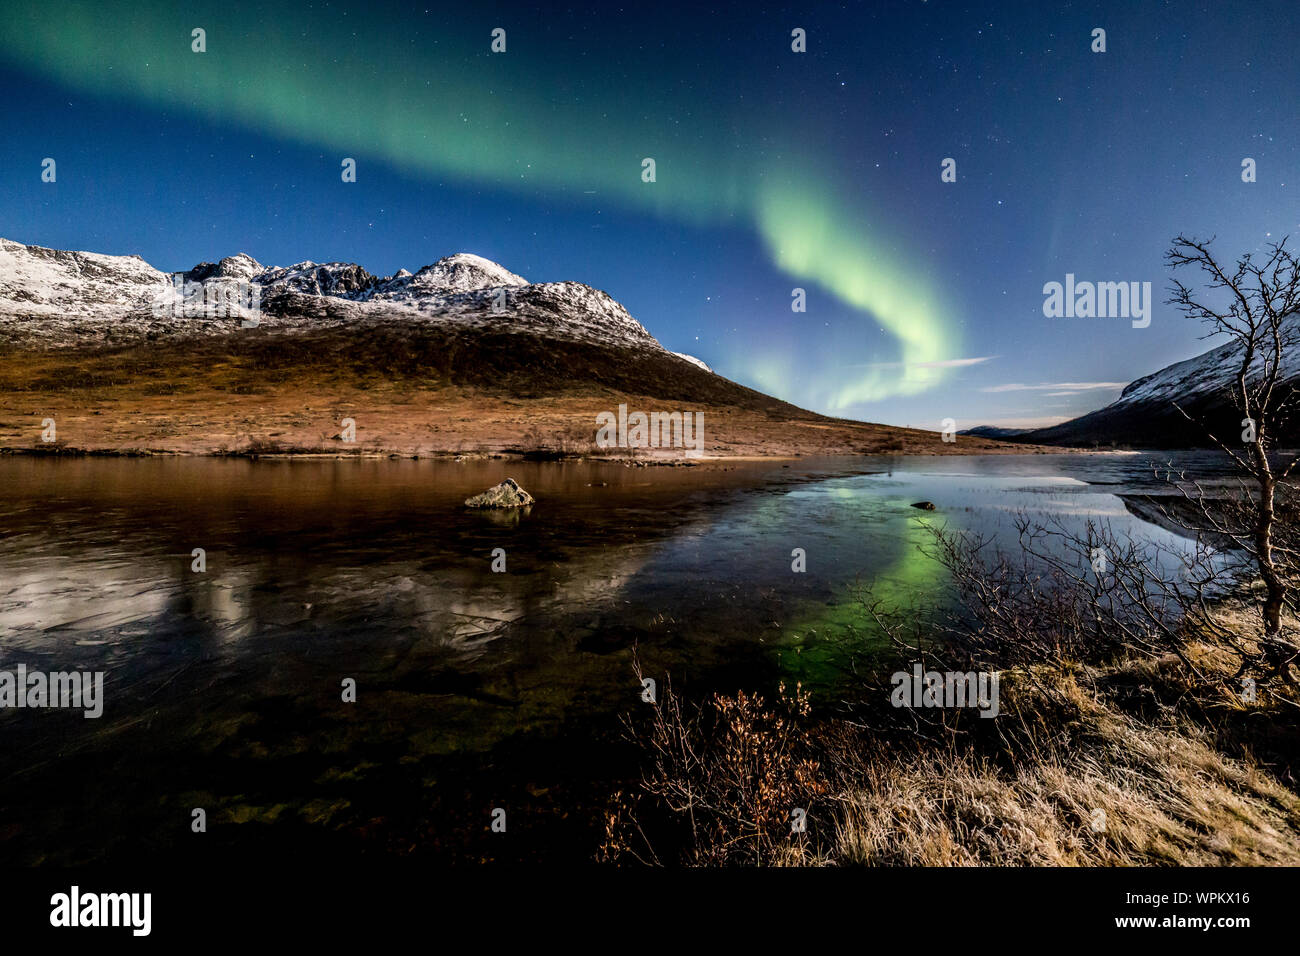 Aurora boreale, Northern Lights, attivo tende colorate,coronas, si spostano in cielo notturno ,a nord del circolo polare artico, Kvaloya ,isola ,Troms ,Tromso, Norvegia Foto Stock